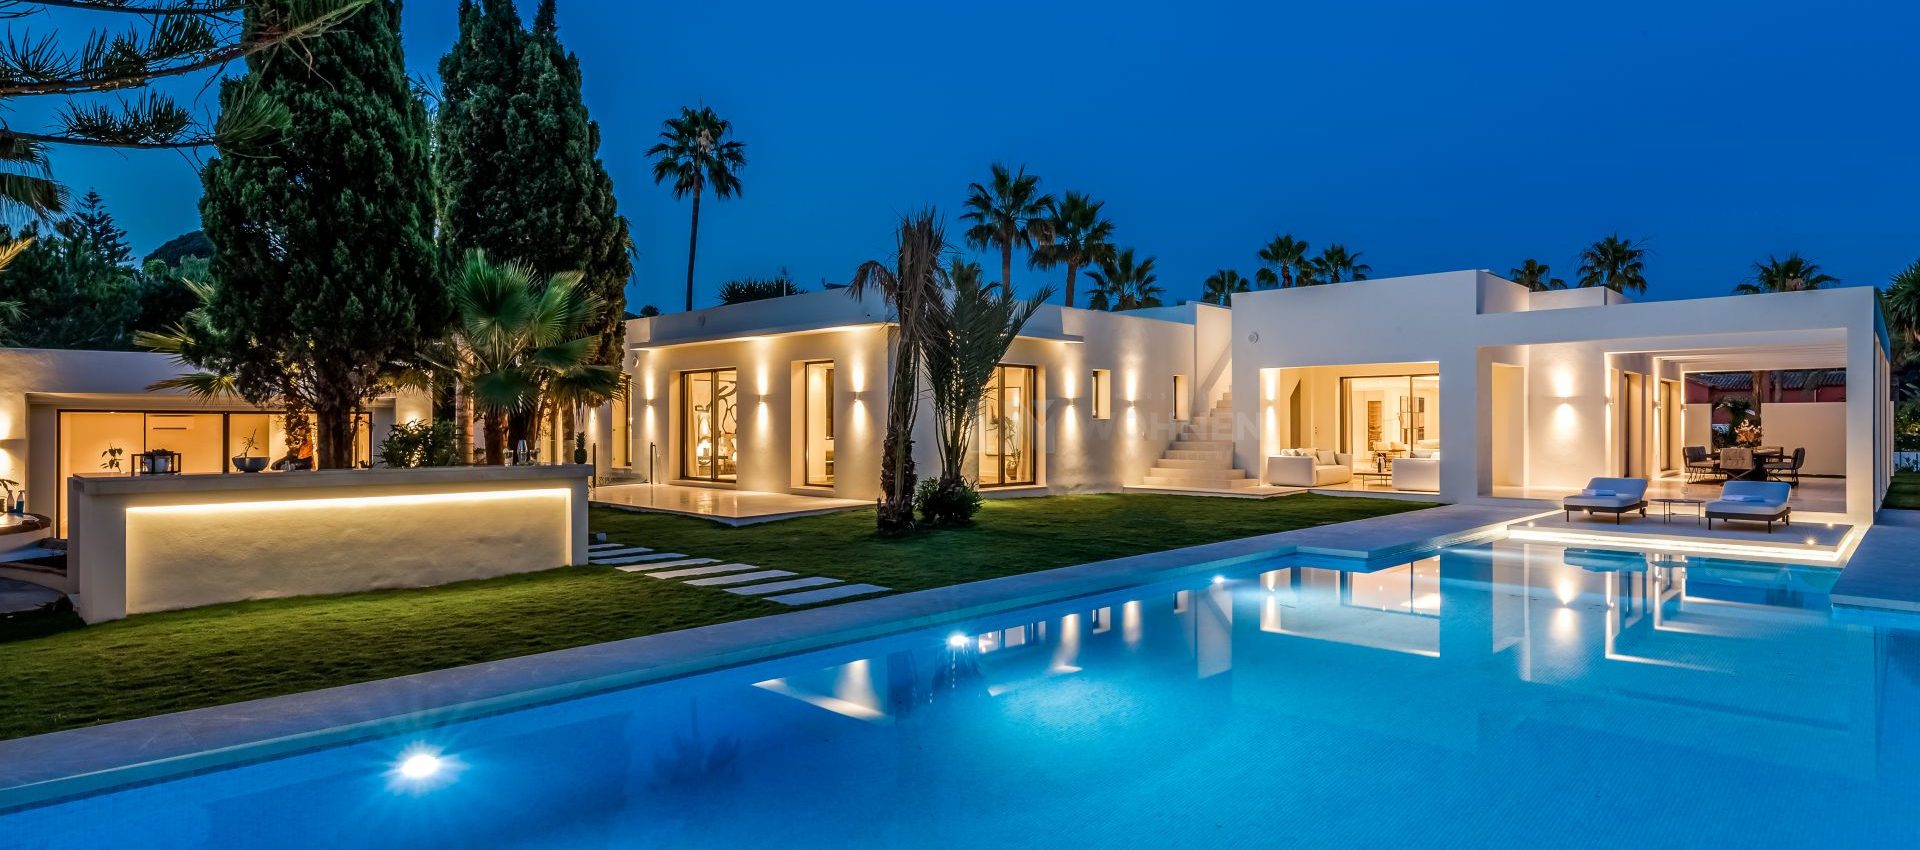 Ein neues Konzept für luxuriöses Wohnen am Strand – Marbella